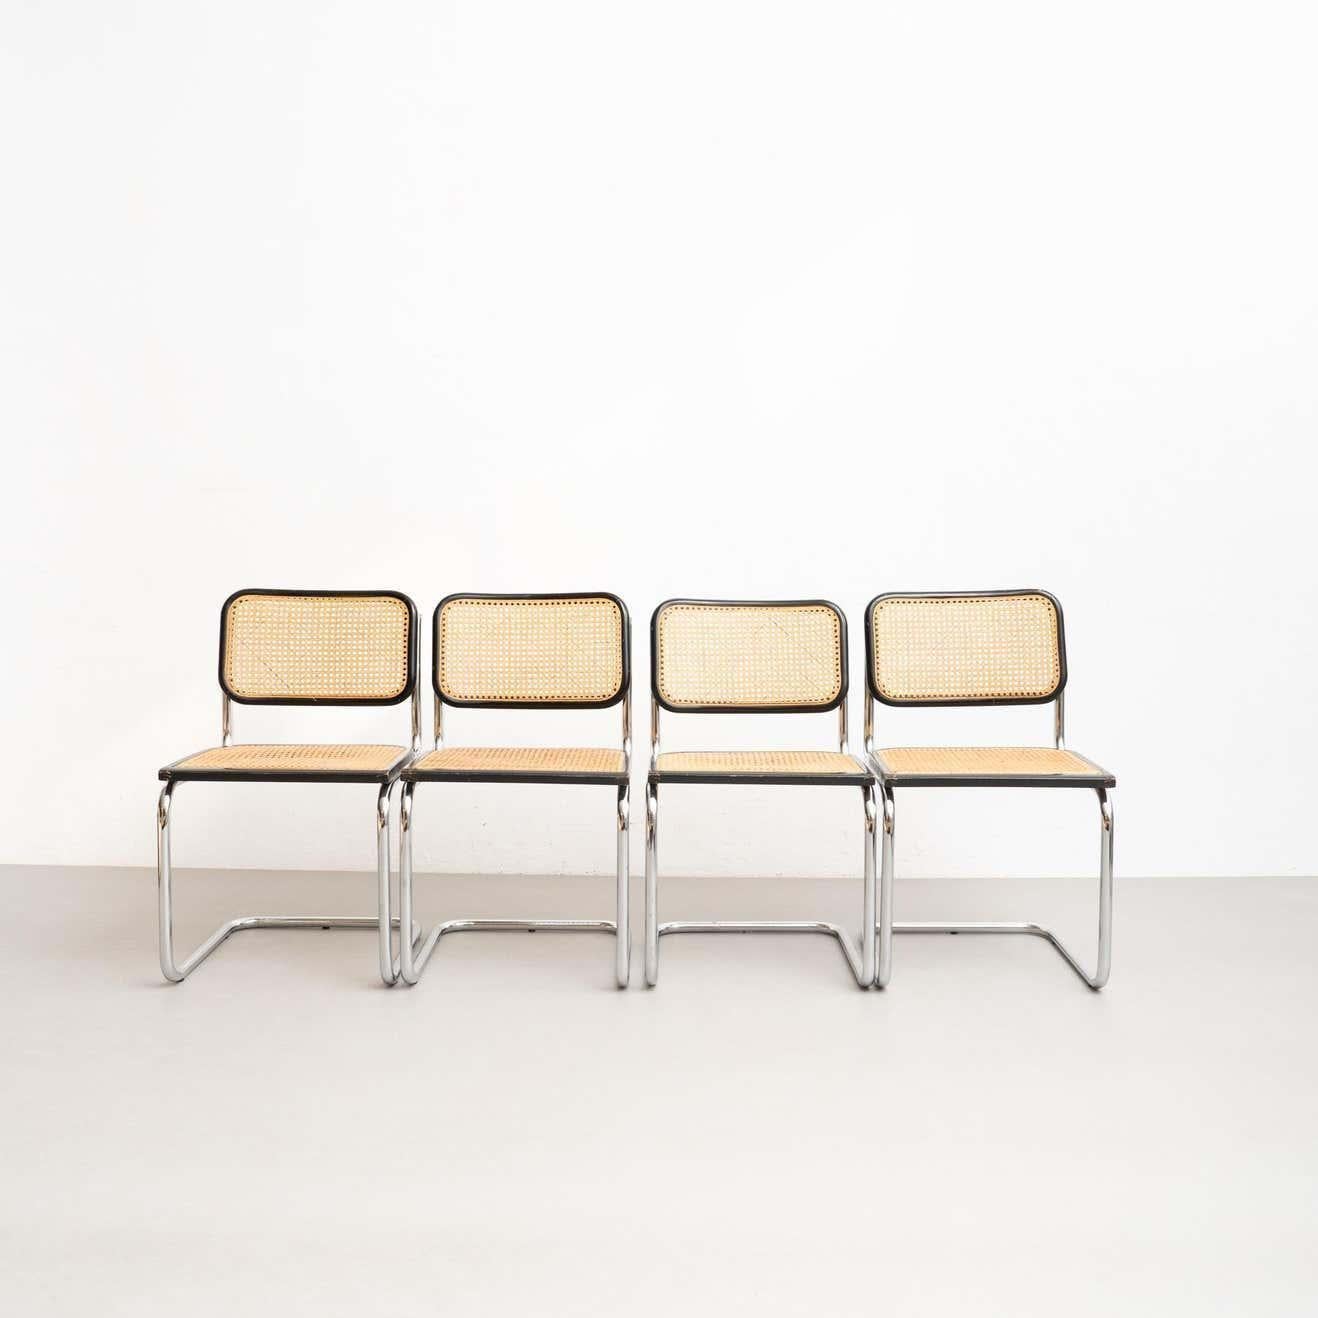 Satz von 4 Stühlen Cesca, entworfen von Marcel Breuer.

Hergestellt in Italien, um 1960 von Unbekanntem Hersteller

Gestell aus Metallrohr, Sitz und Rückenlehne aus Holz und Rattan.

In gutem Originalzustand mit geringen alters- und